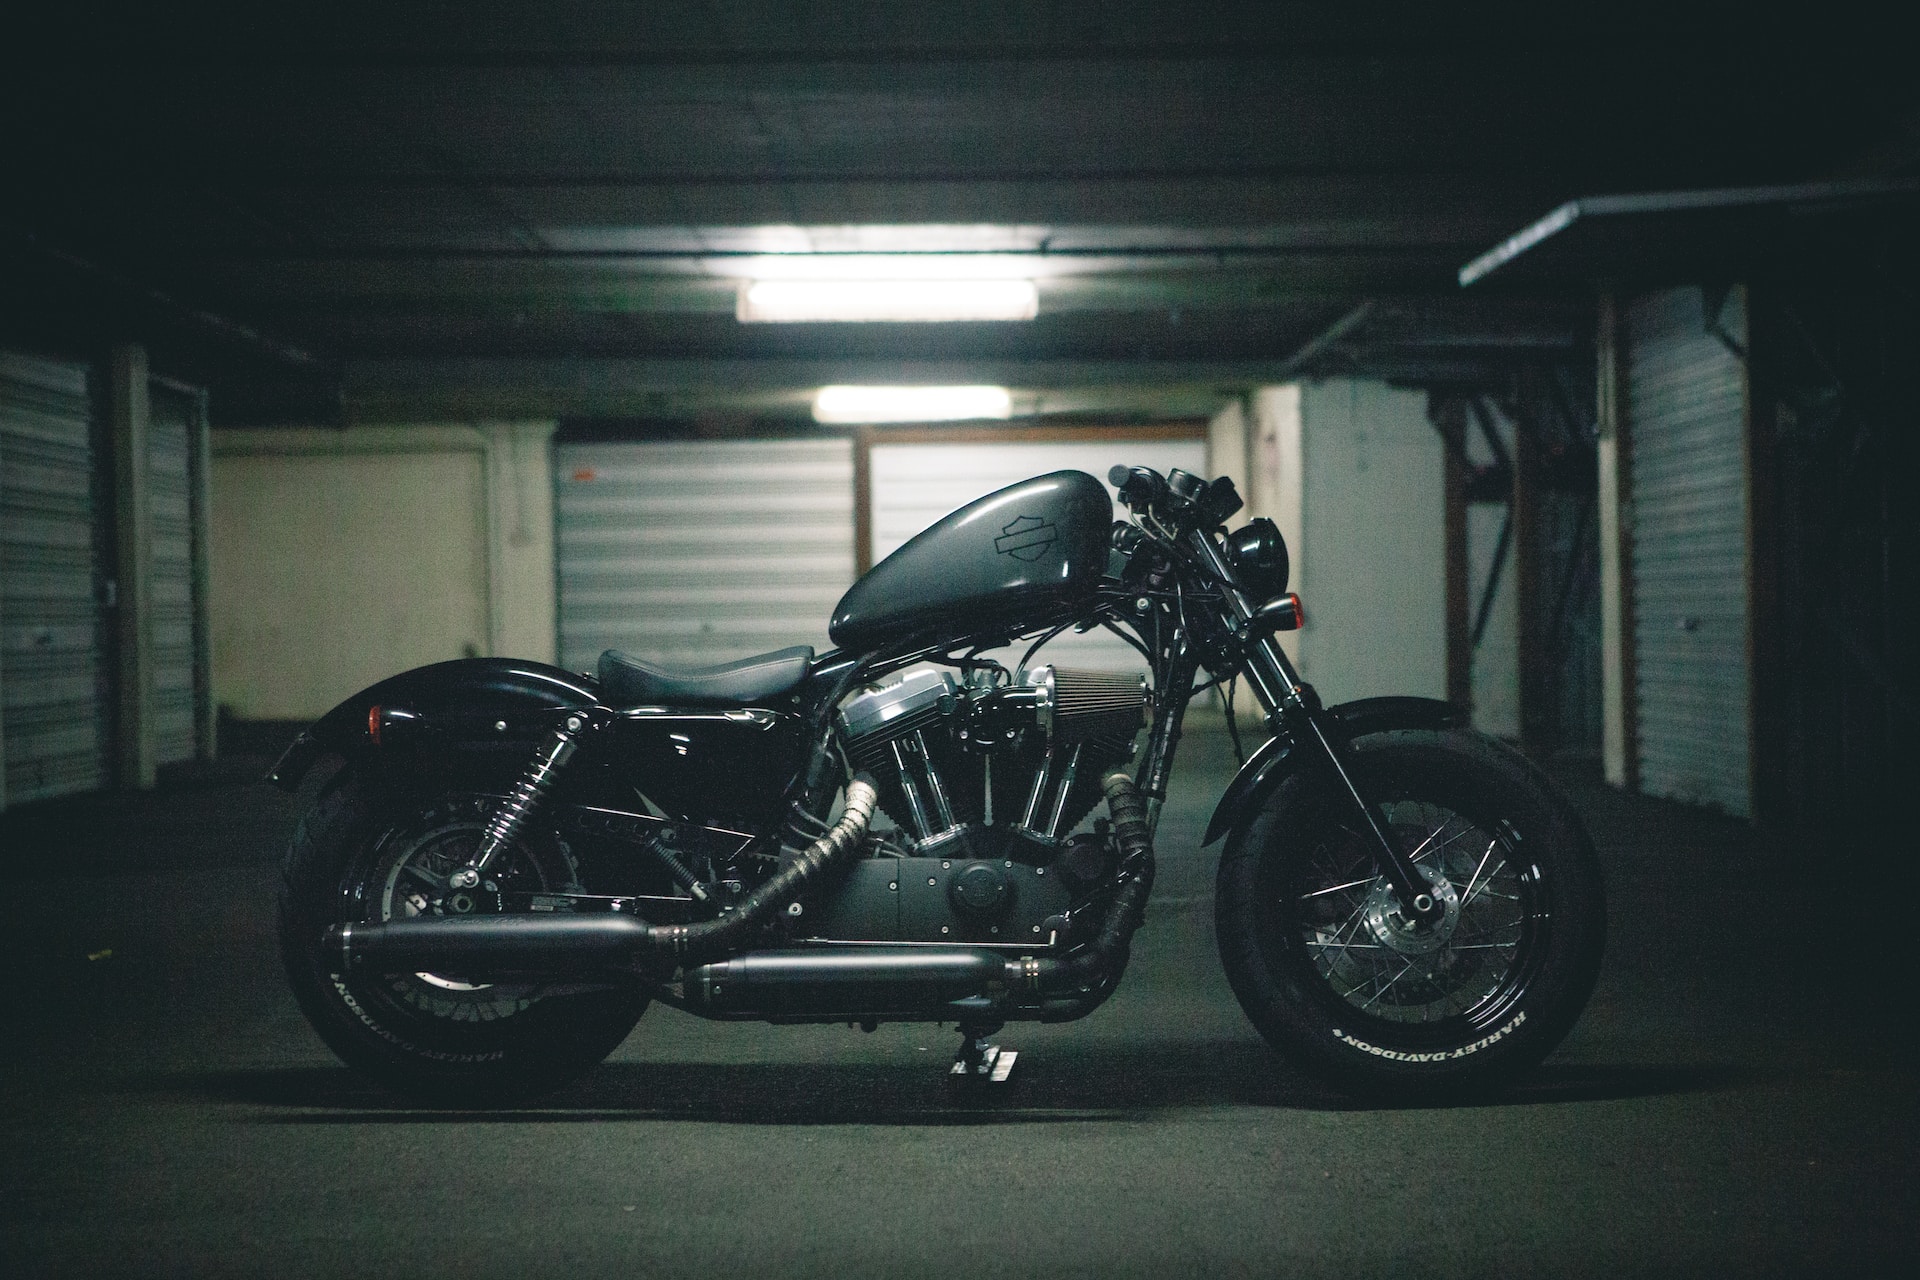 A motorbike parked in a garage